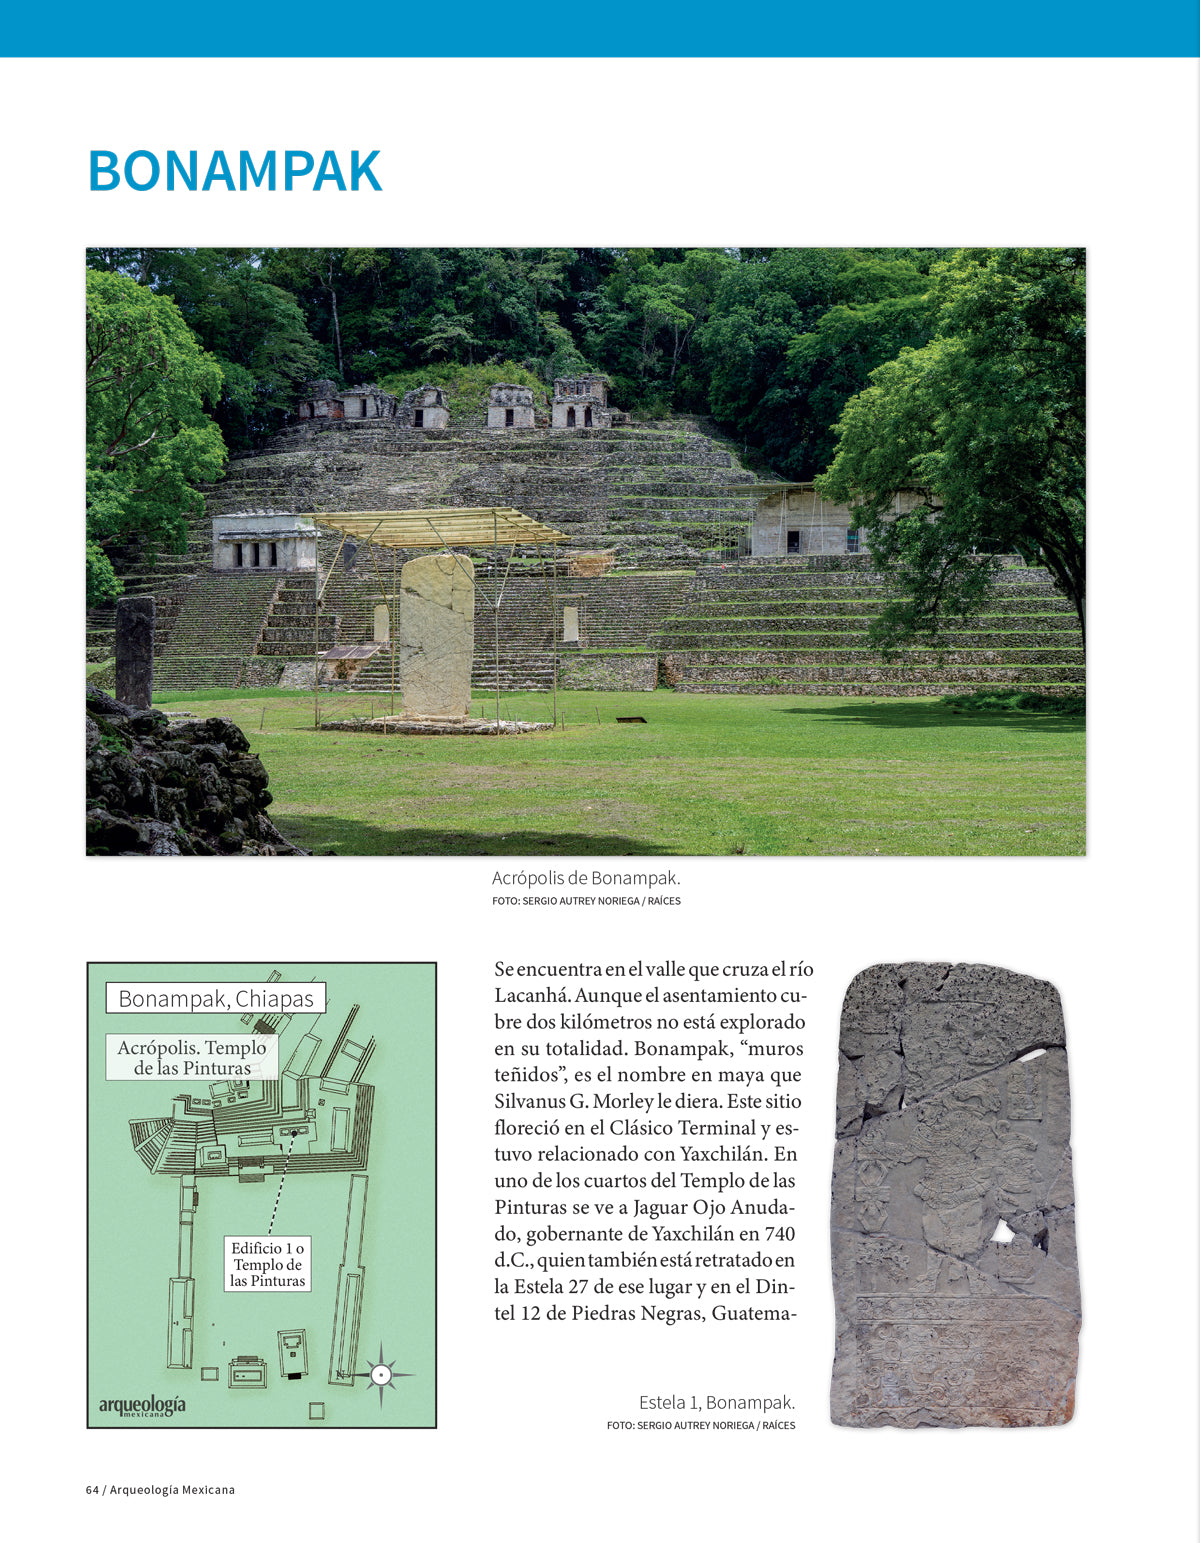 Recorridos por Chiapas. Guía de viajeros al mundo maya